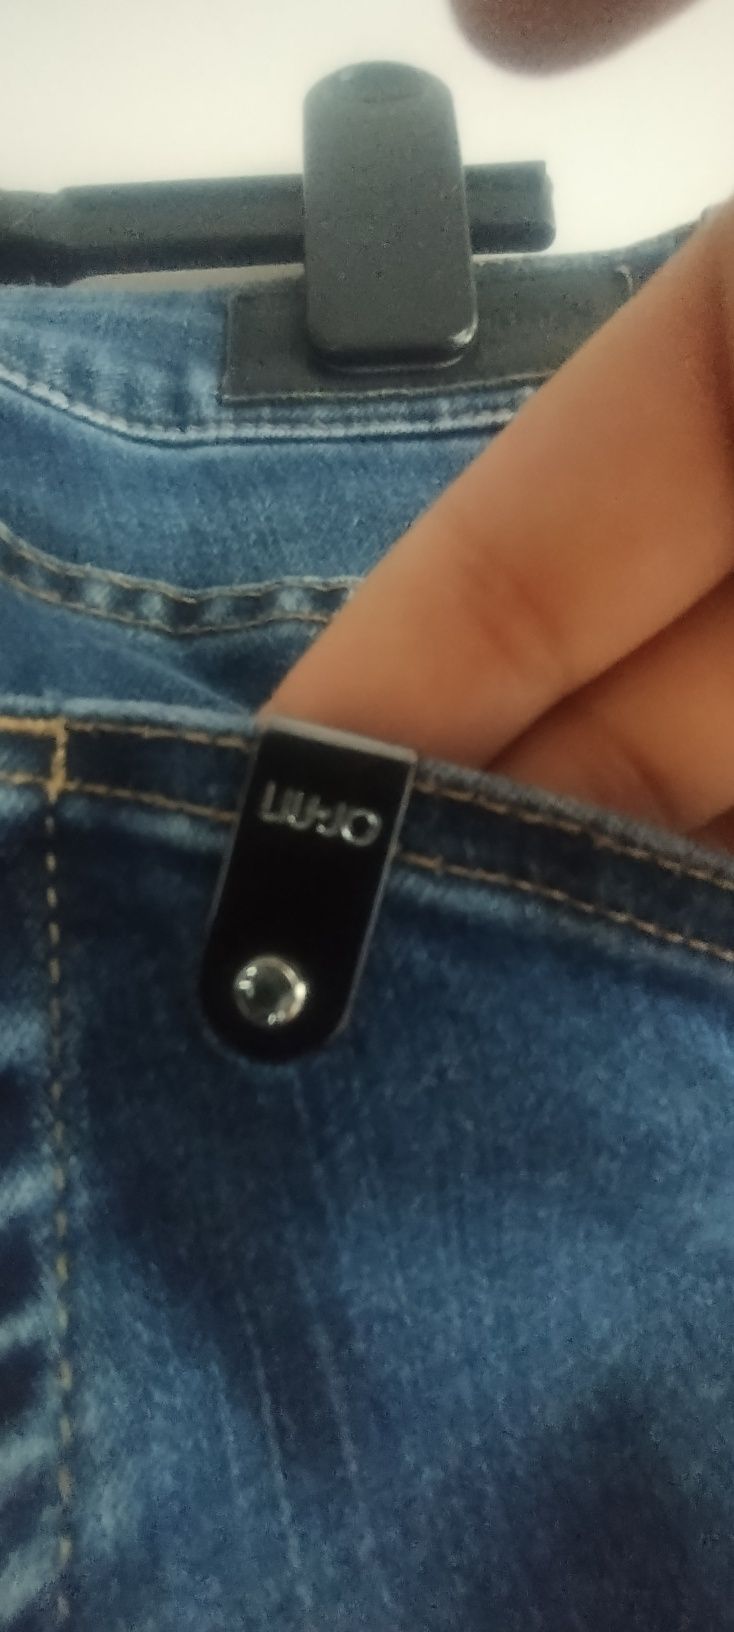 Świetne granatowe jeansy z cekinami Liu Jo 36/38